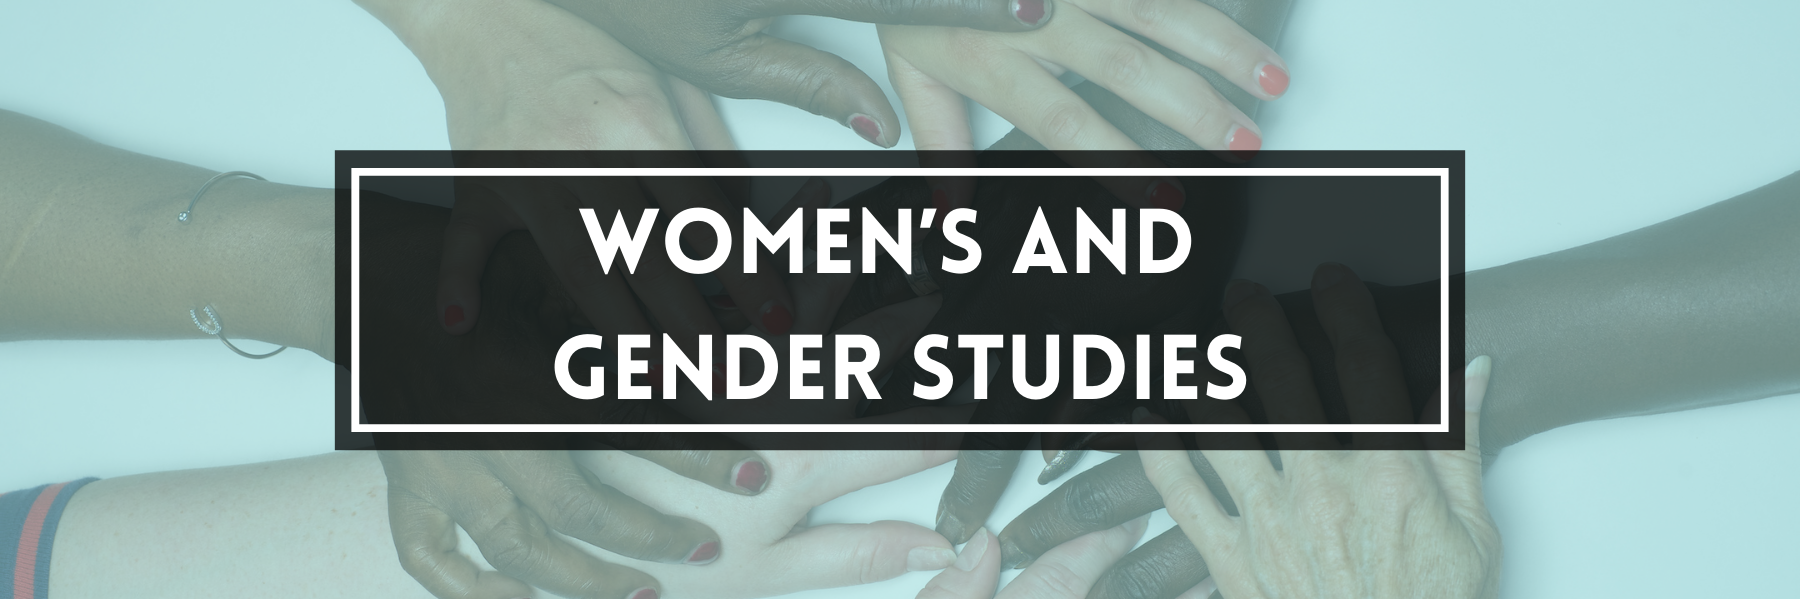 Women's and Gender Studies 